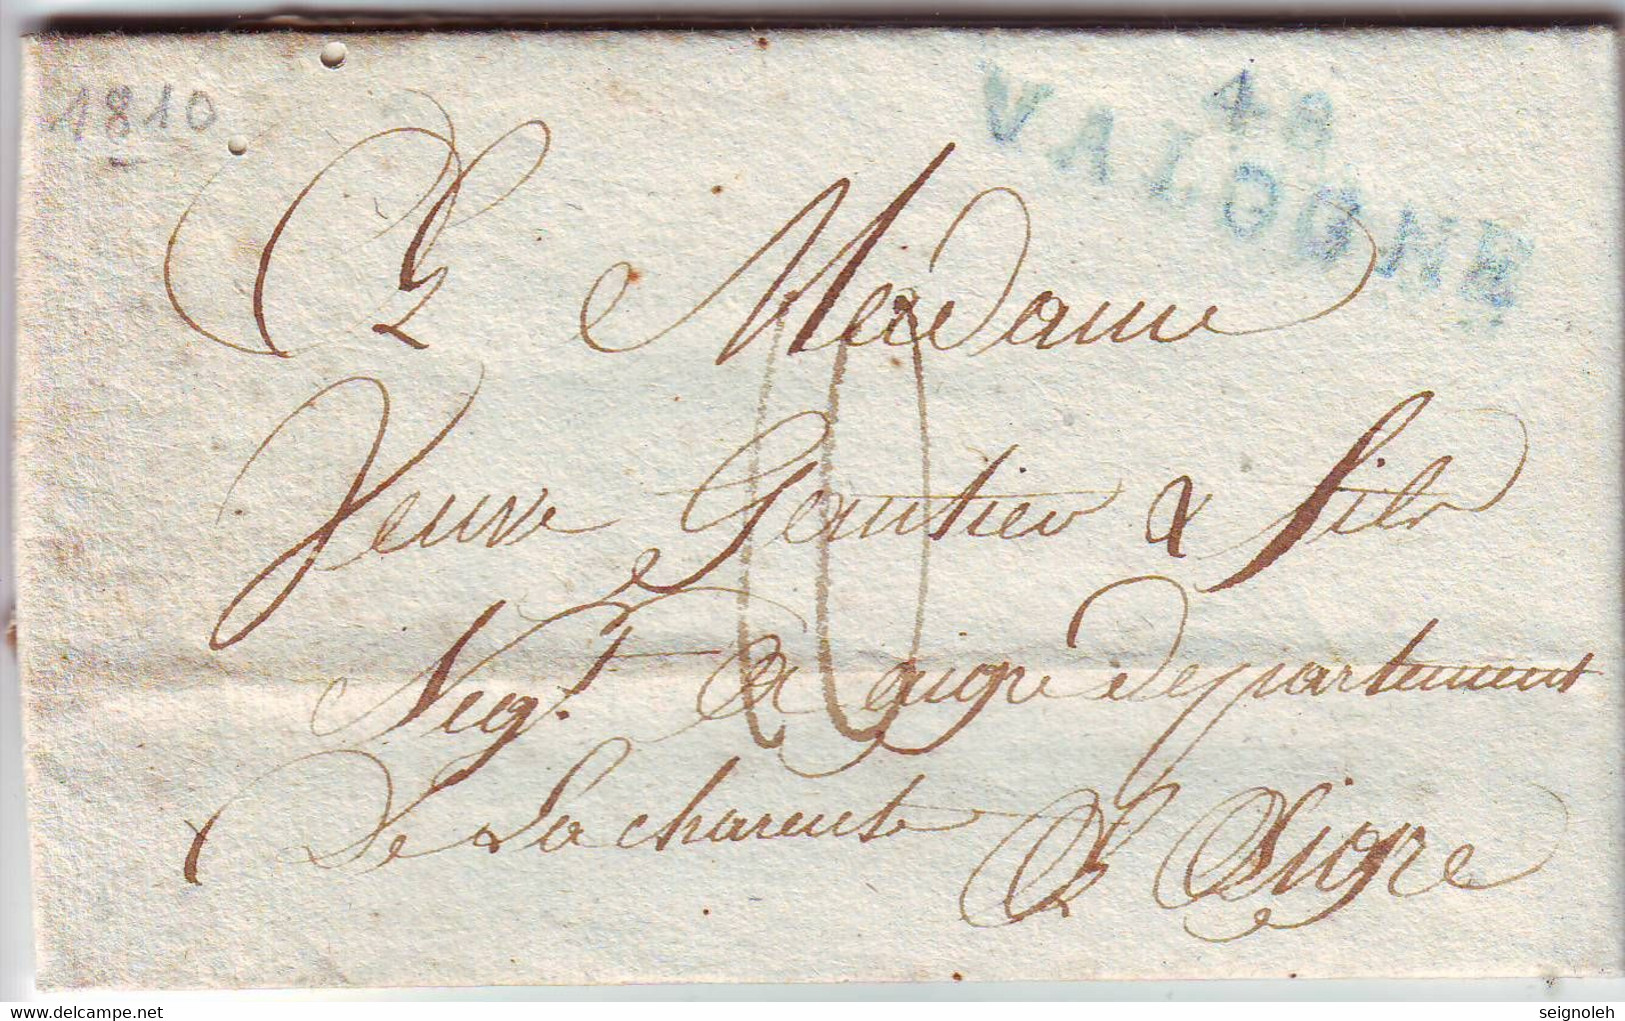 Marque Postale BLEUE  48 VALOGNE  Manche , Lettre Texte Date St PIERRE L' EGLISE 25 Mai 1810 , TTB - 1801-1848: Precursors XIX